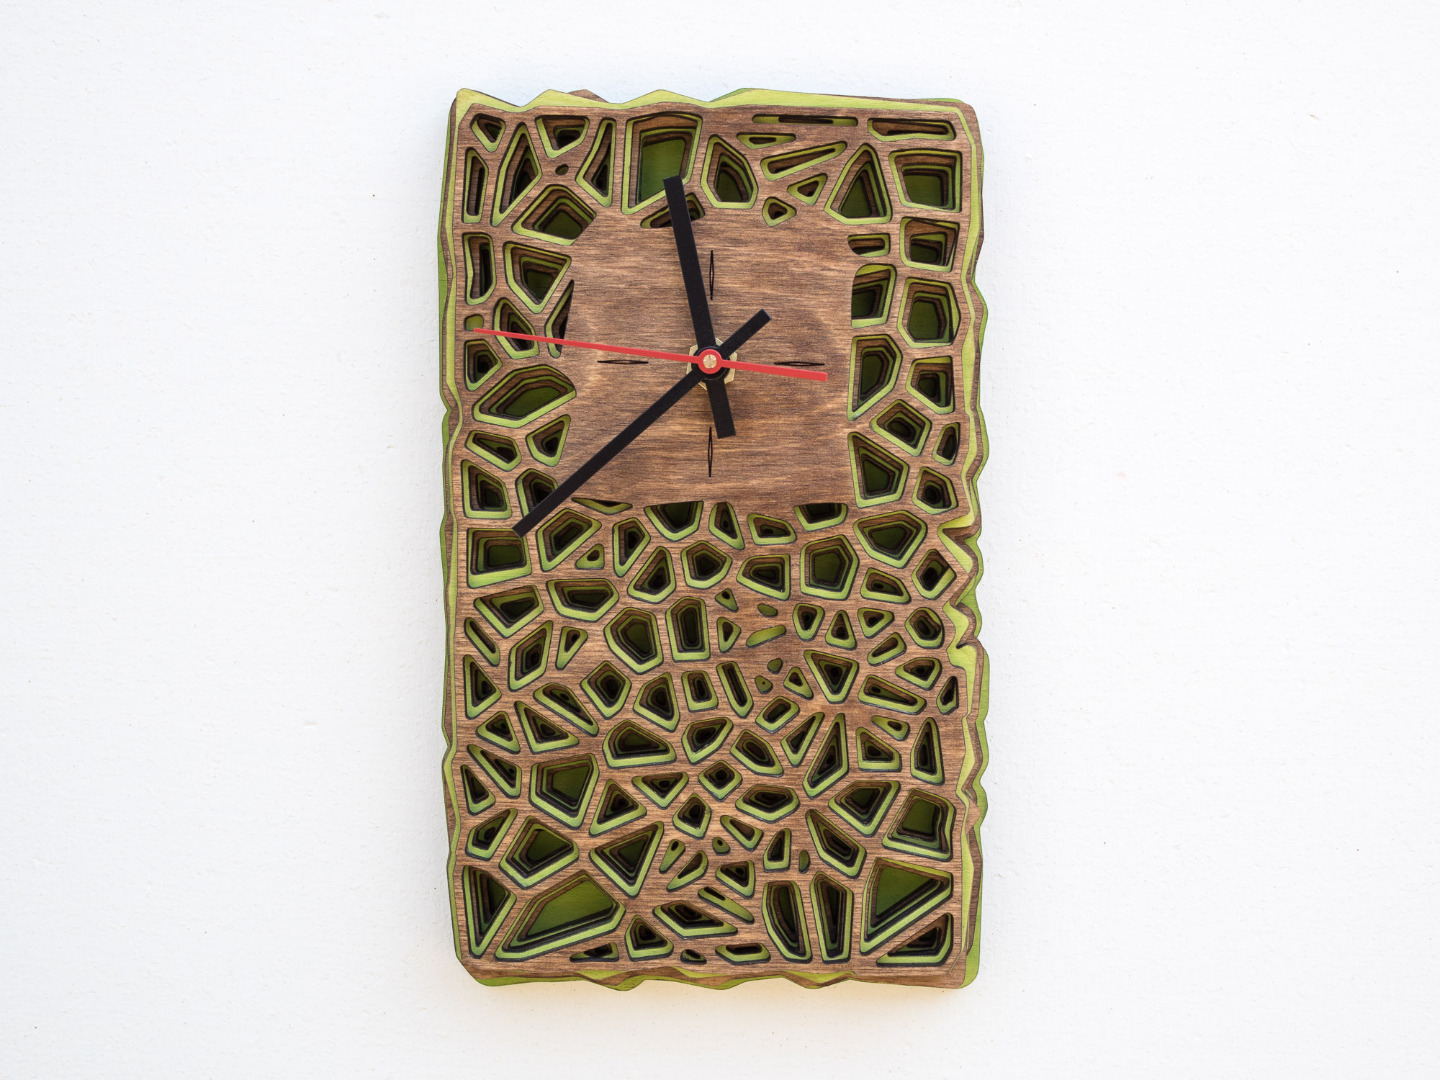 Uhr aus Holz für Schreibtisch oder Wand - Organisches Zweifarbiges Design in Walnuss und Maigrün 9